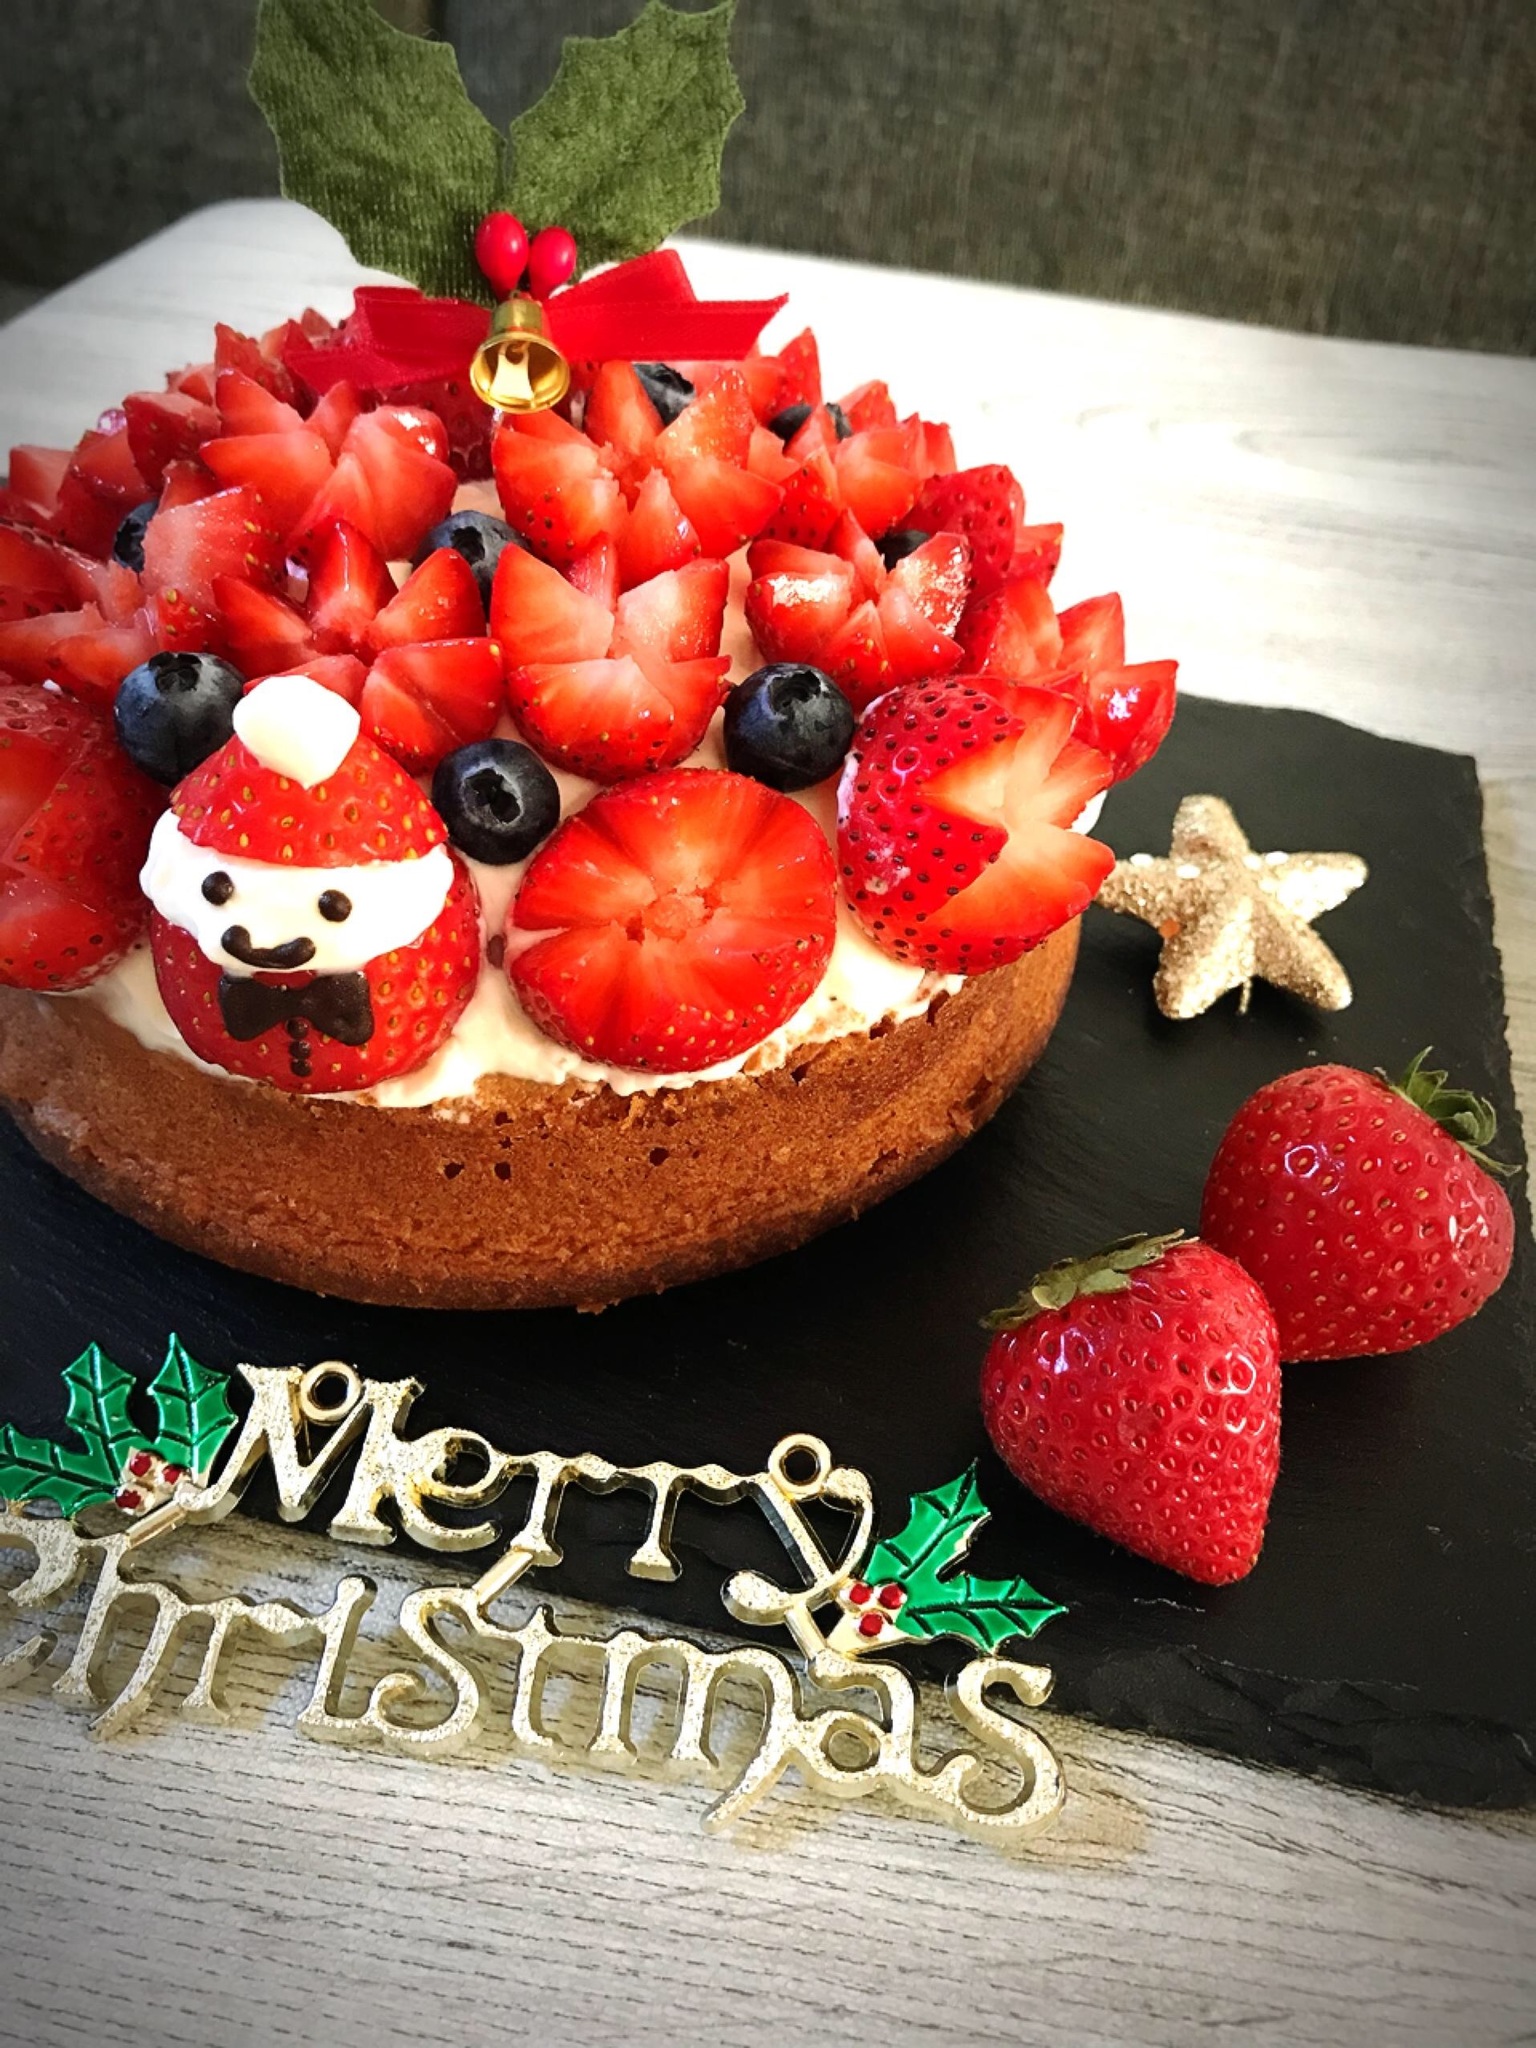 ふわふわガトーのクリスマスケーキ いちごのツリーガトー 開催 お菓子教室 610 東京都杉並区 の21年3月レッスン情報 料理教室検索サイト クスパ